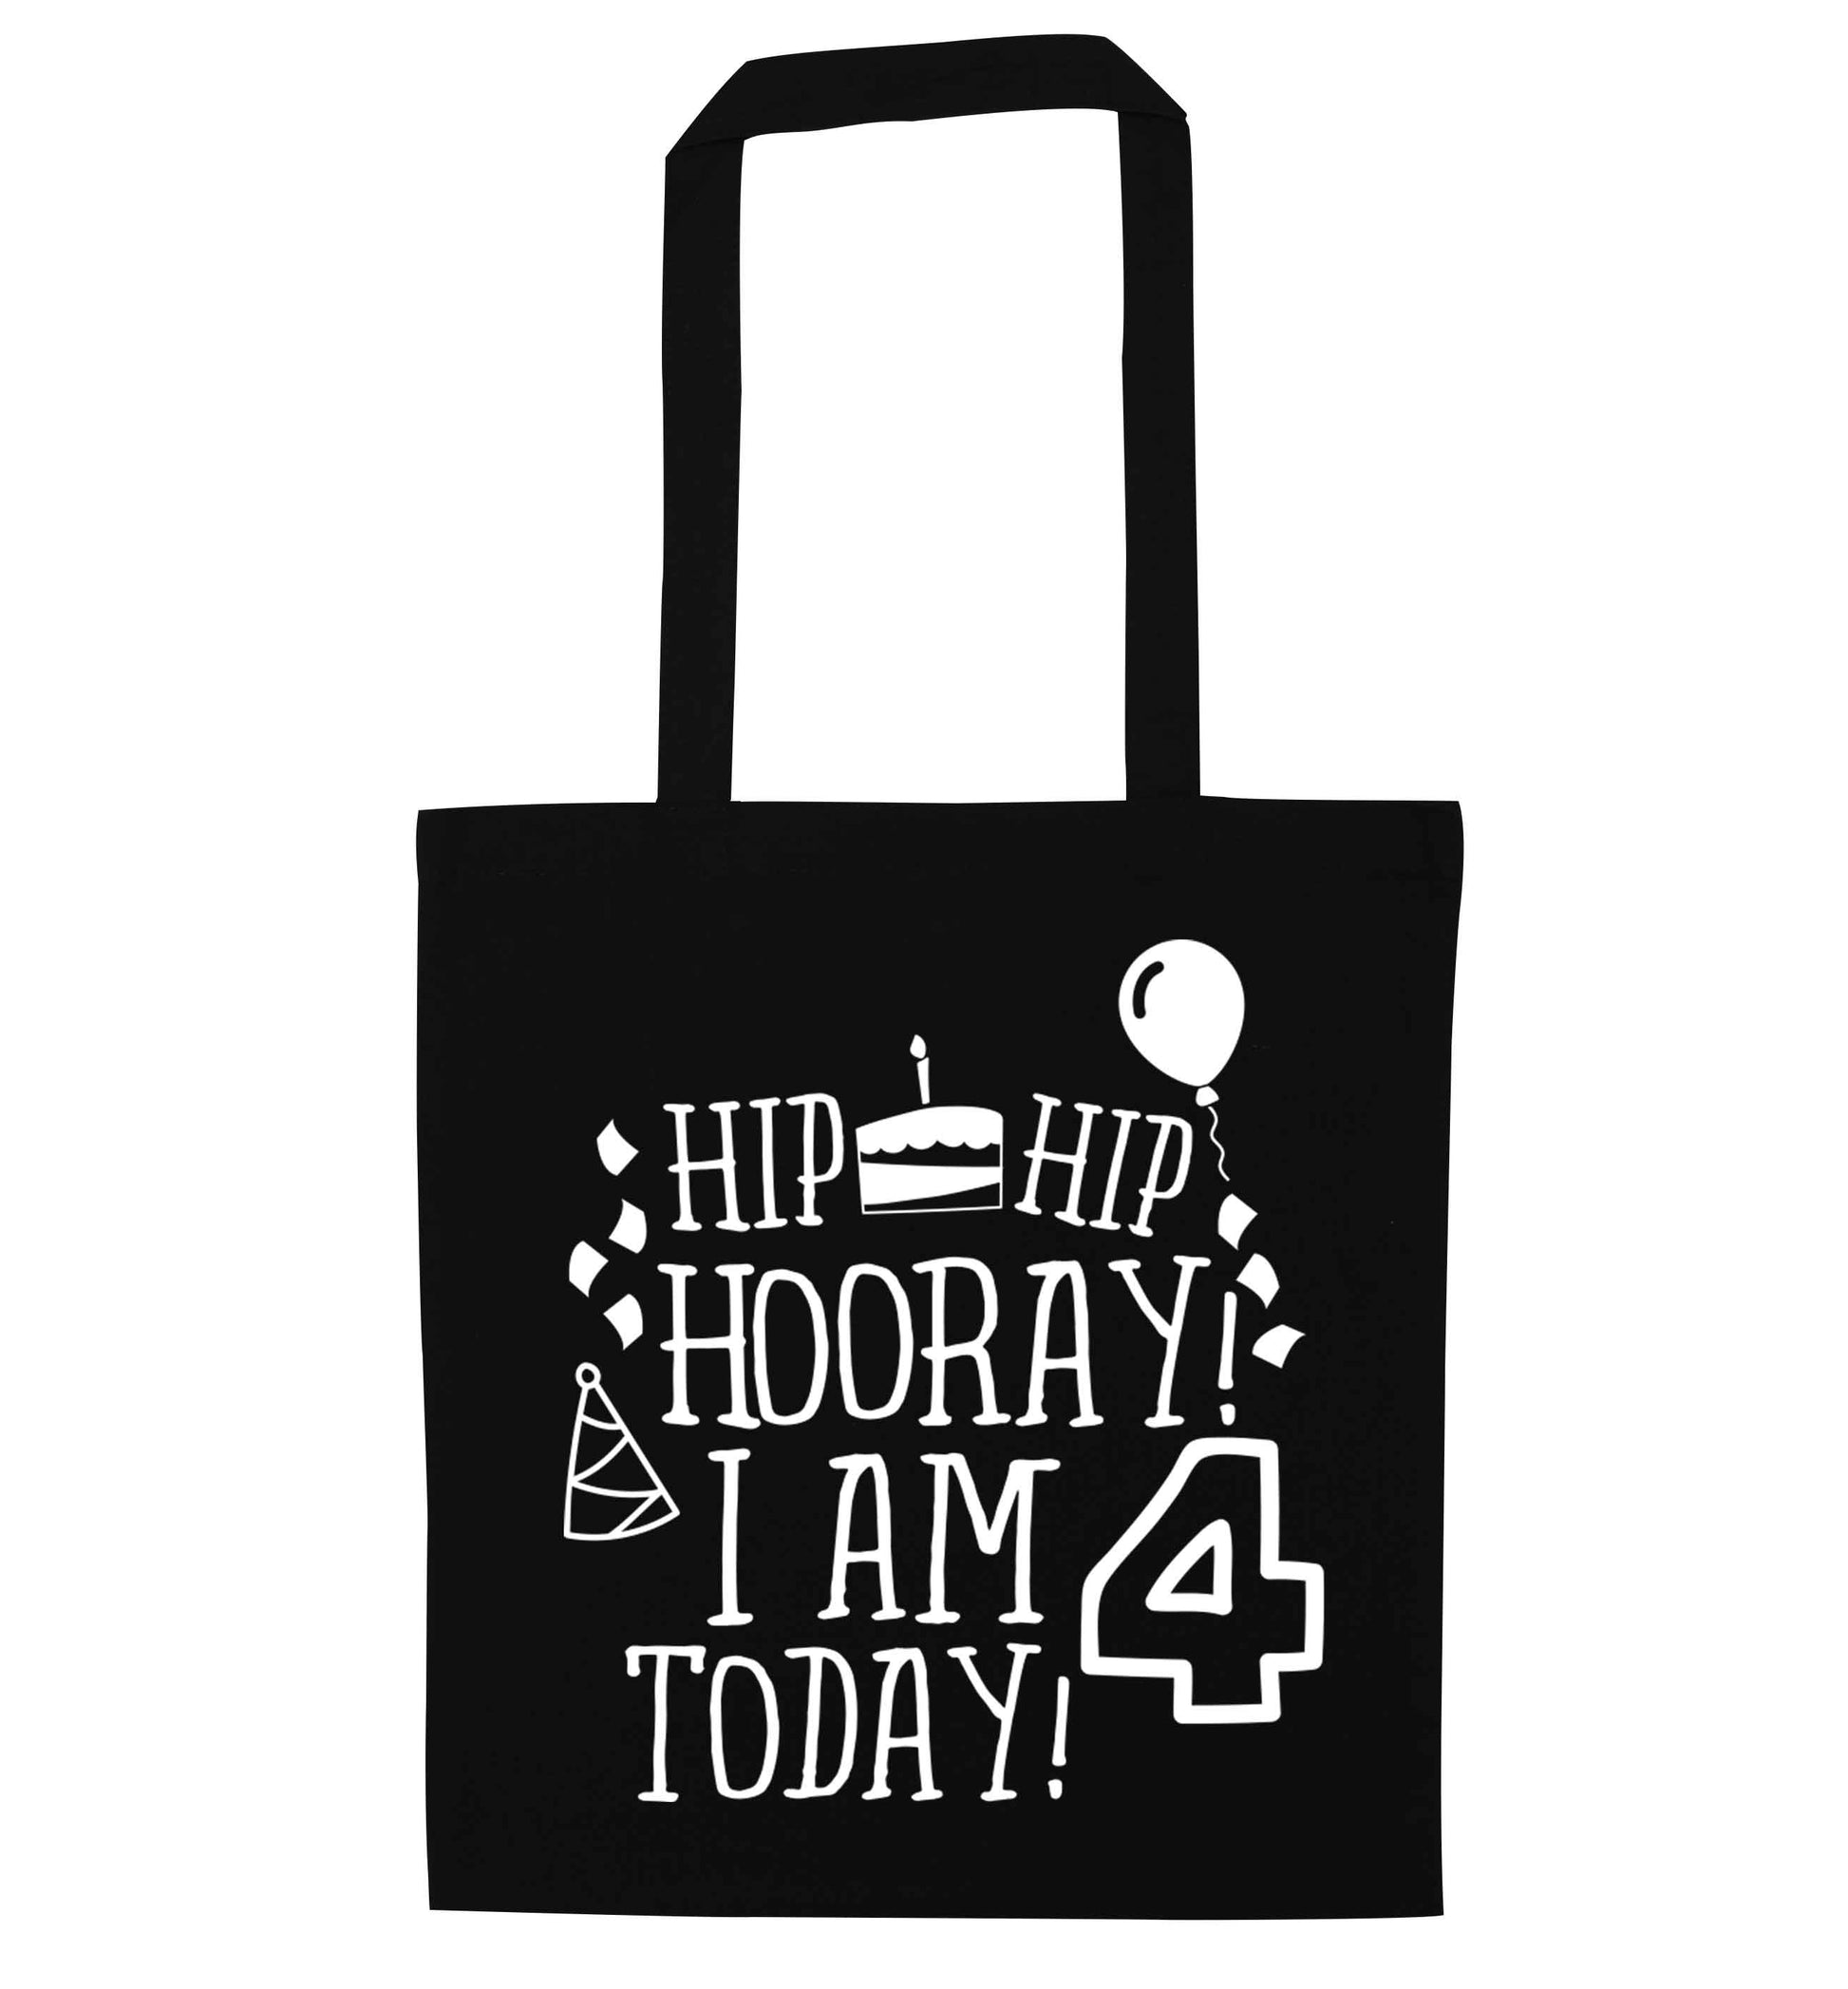 Hip hip hooray I am four today! black tote bag